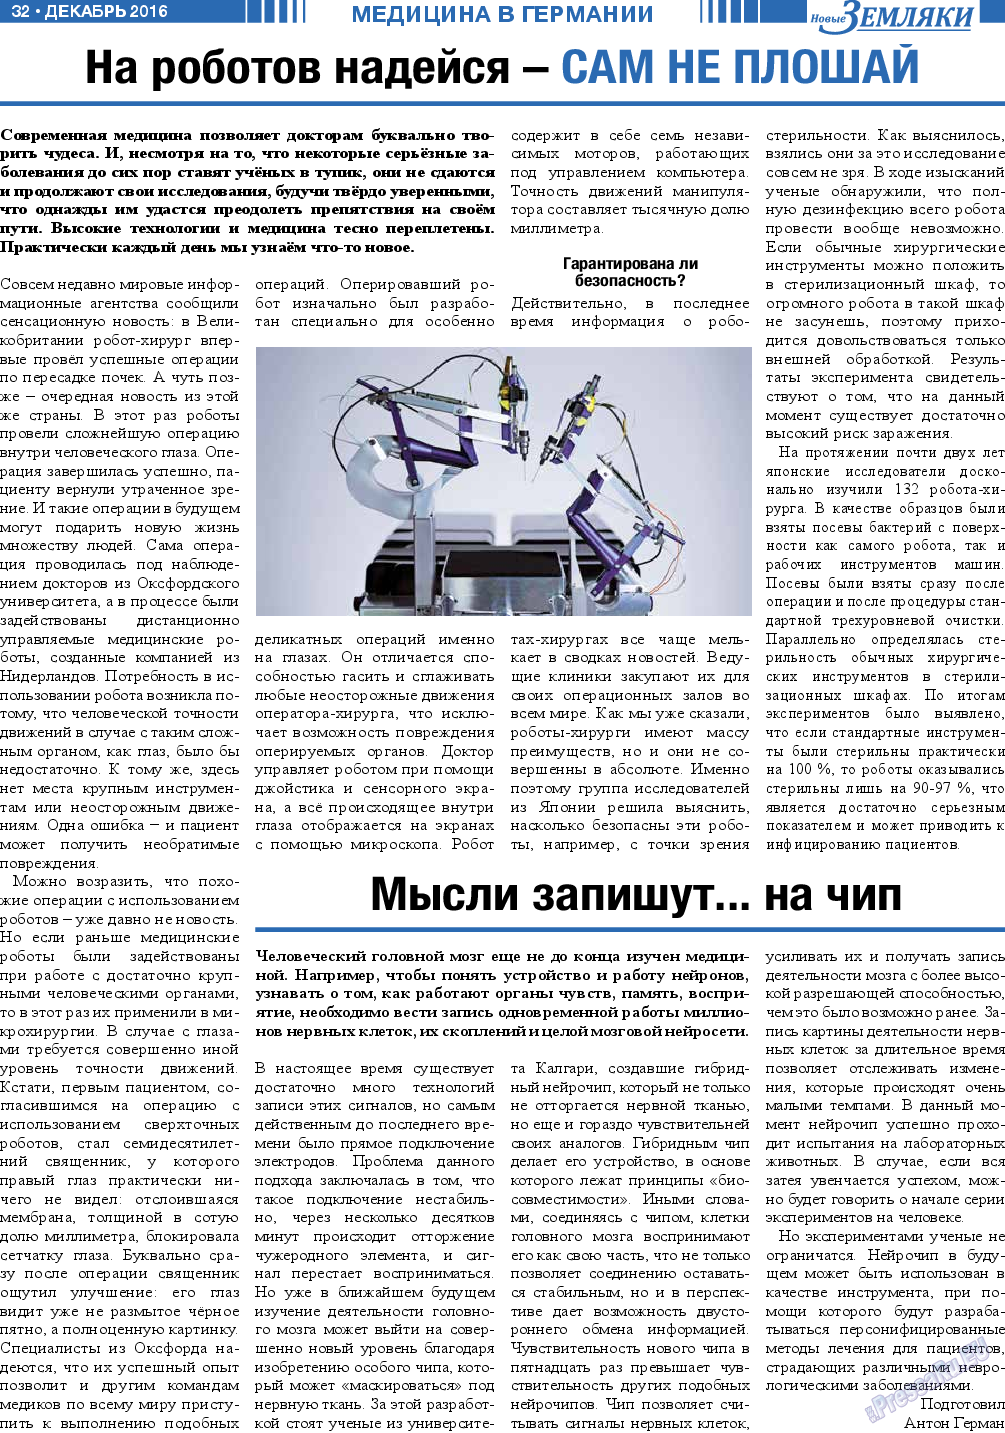 Новые Земляки, газета. 2016 №12 стр.32